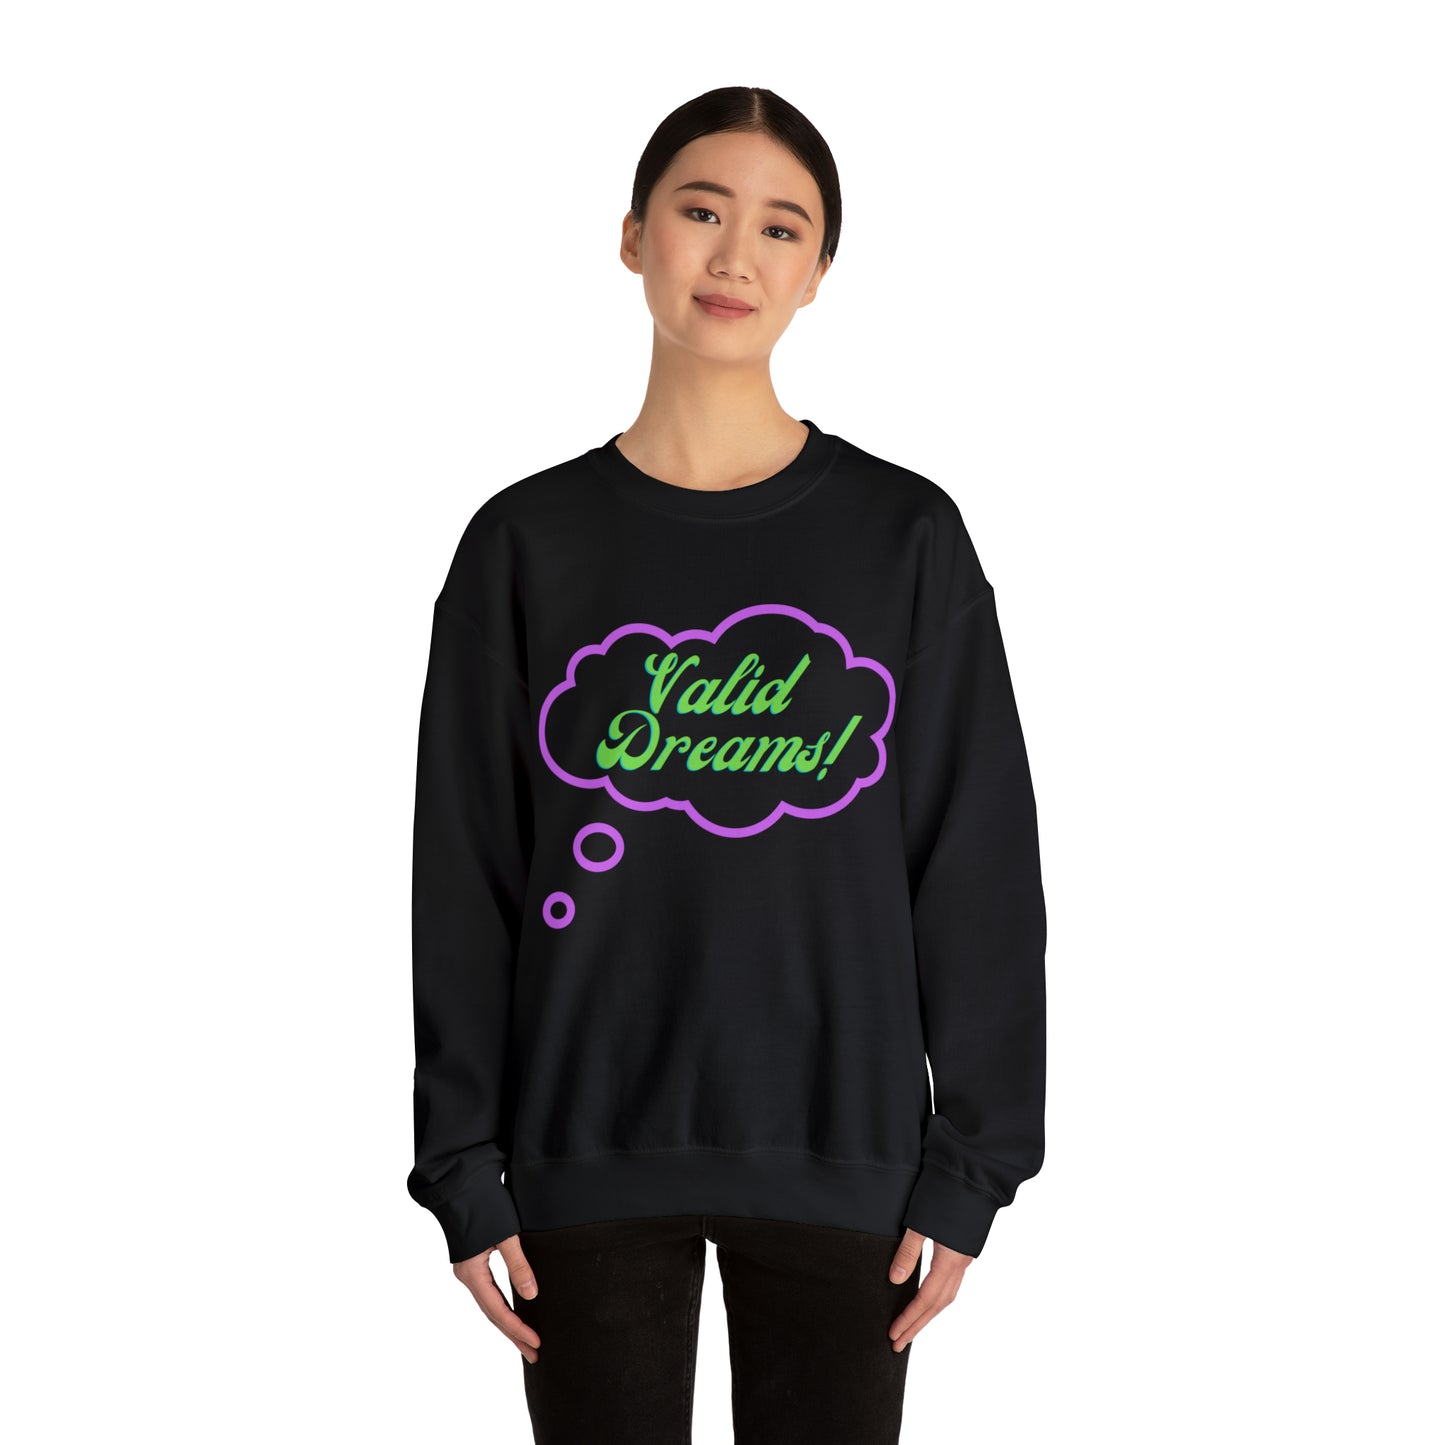 Valid Dreams Crewneck Sweatshirt Gift